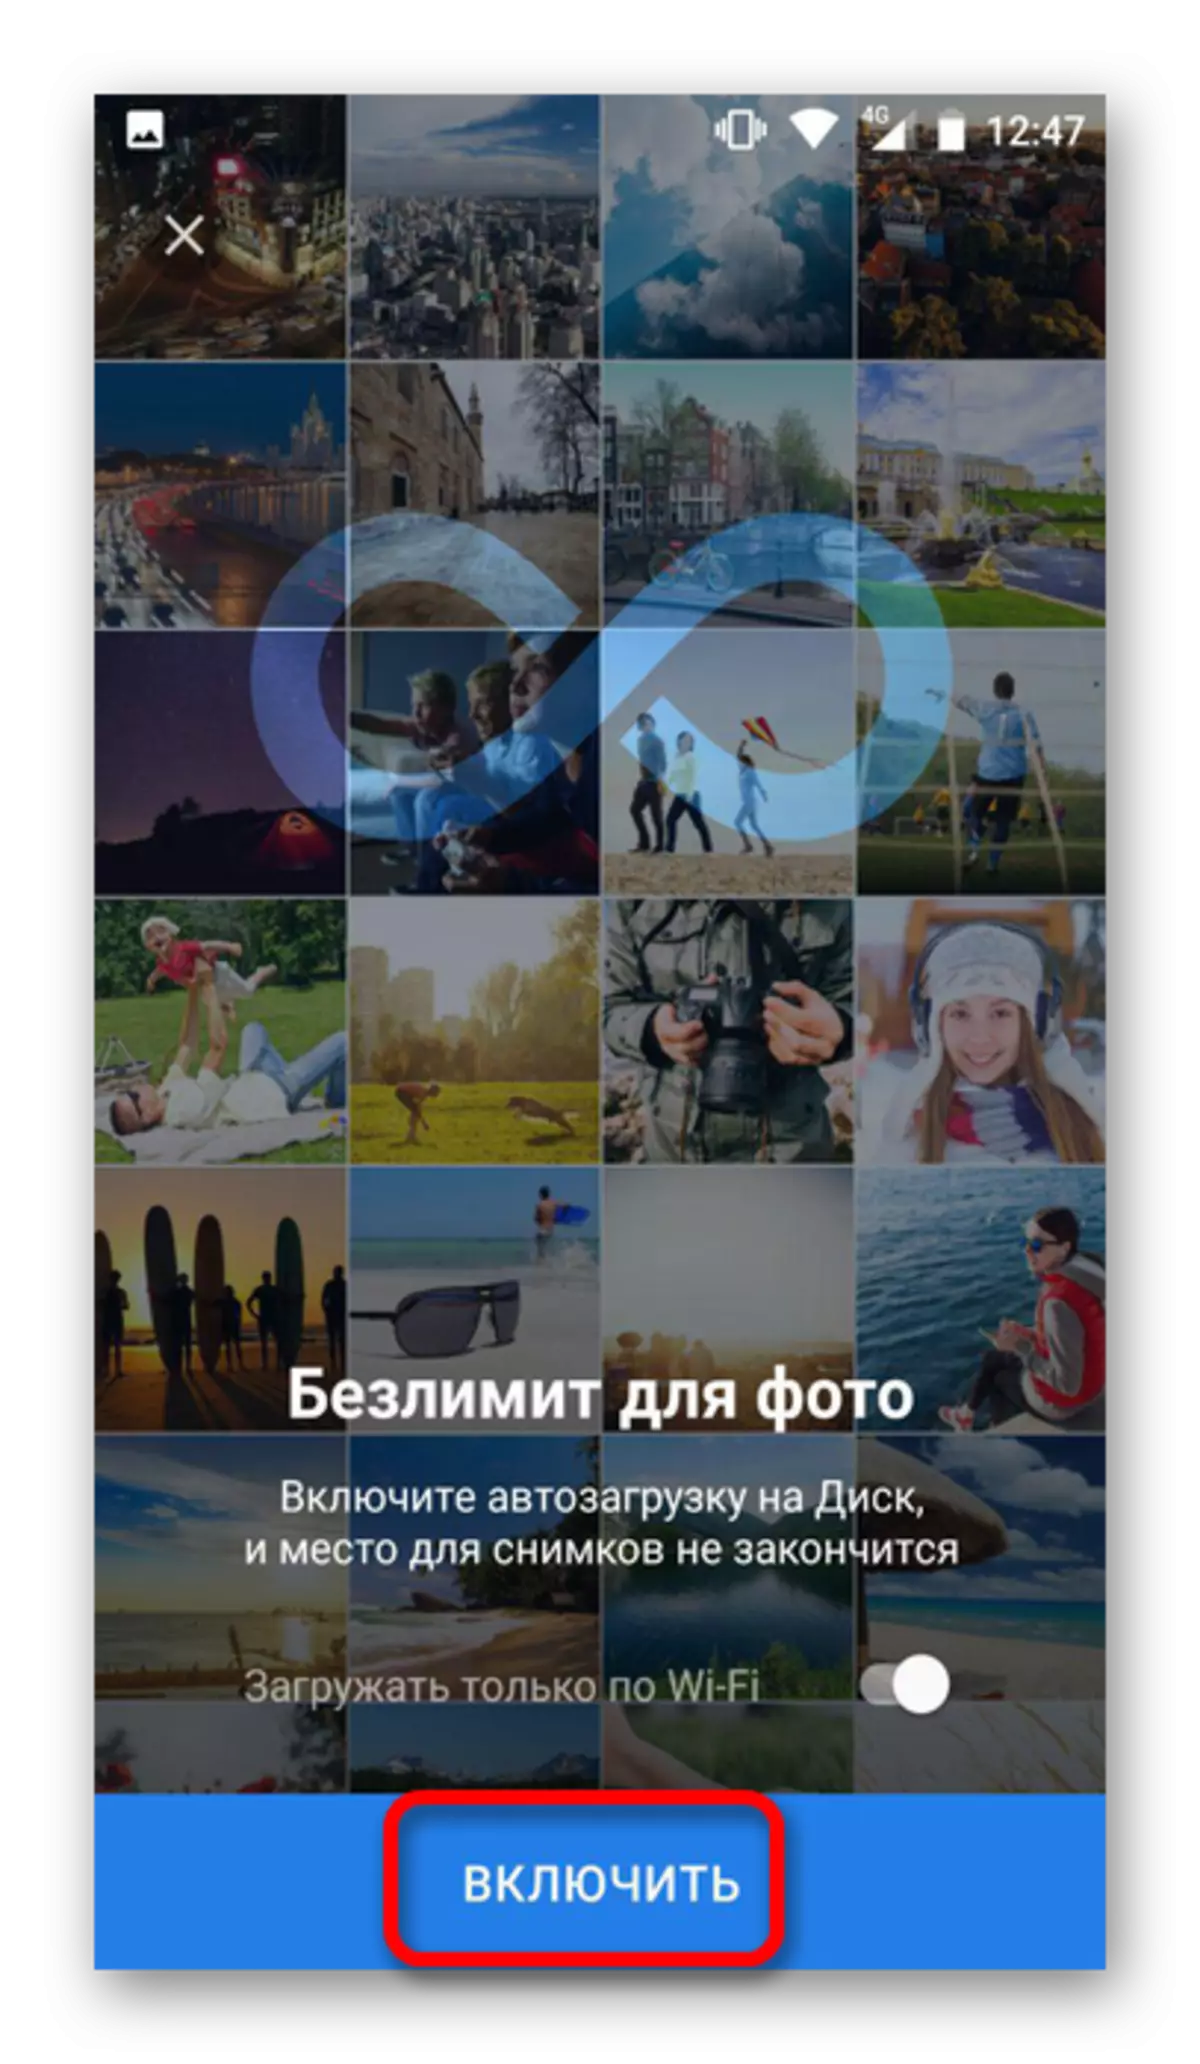 Cuir isteach comhaid autoload ó dhiosca Yandex ar Android